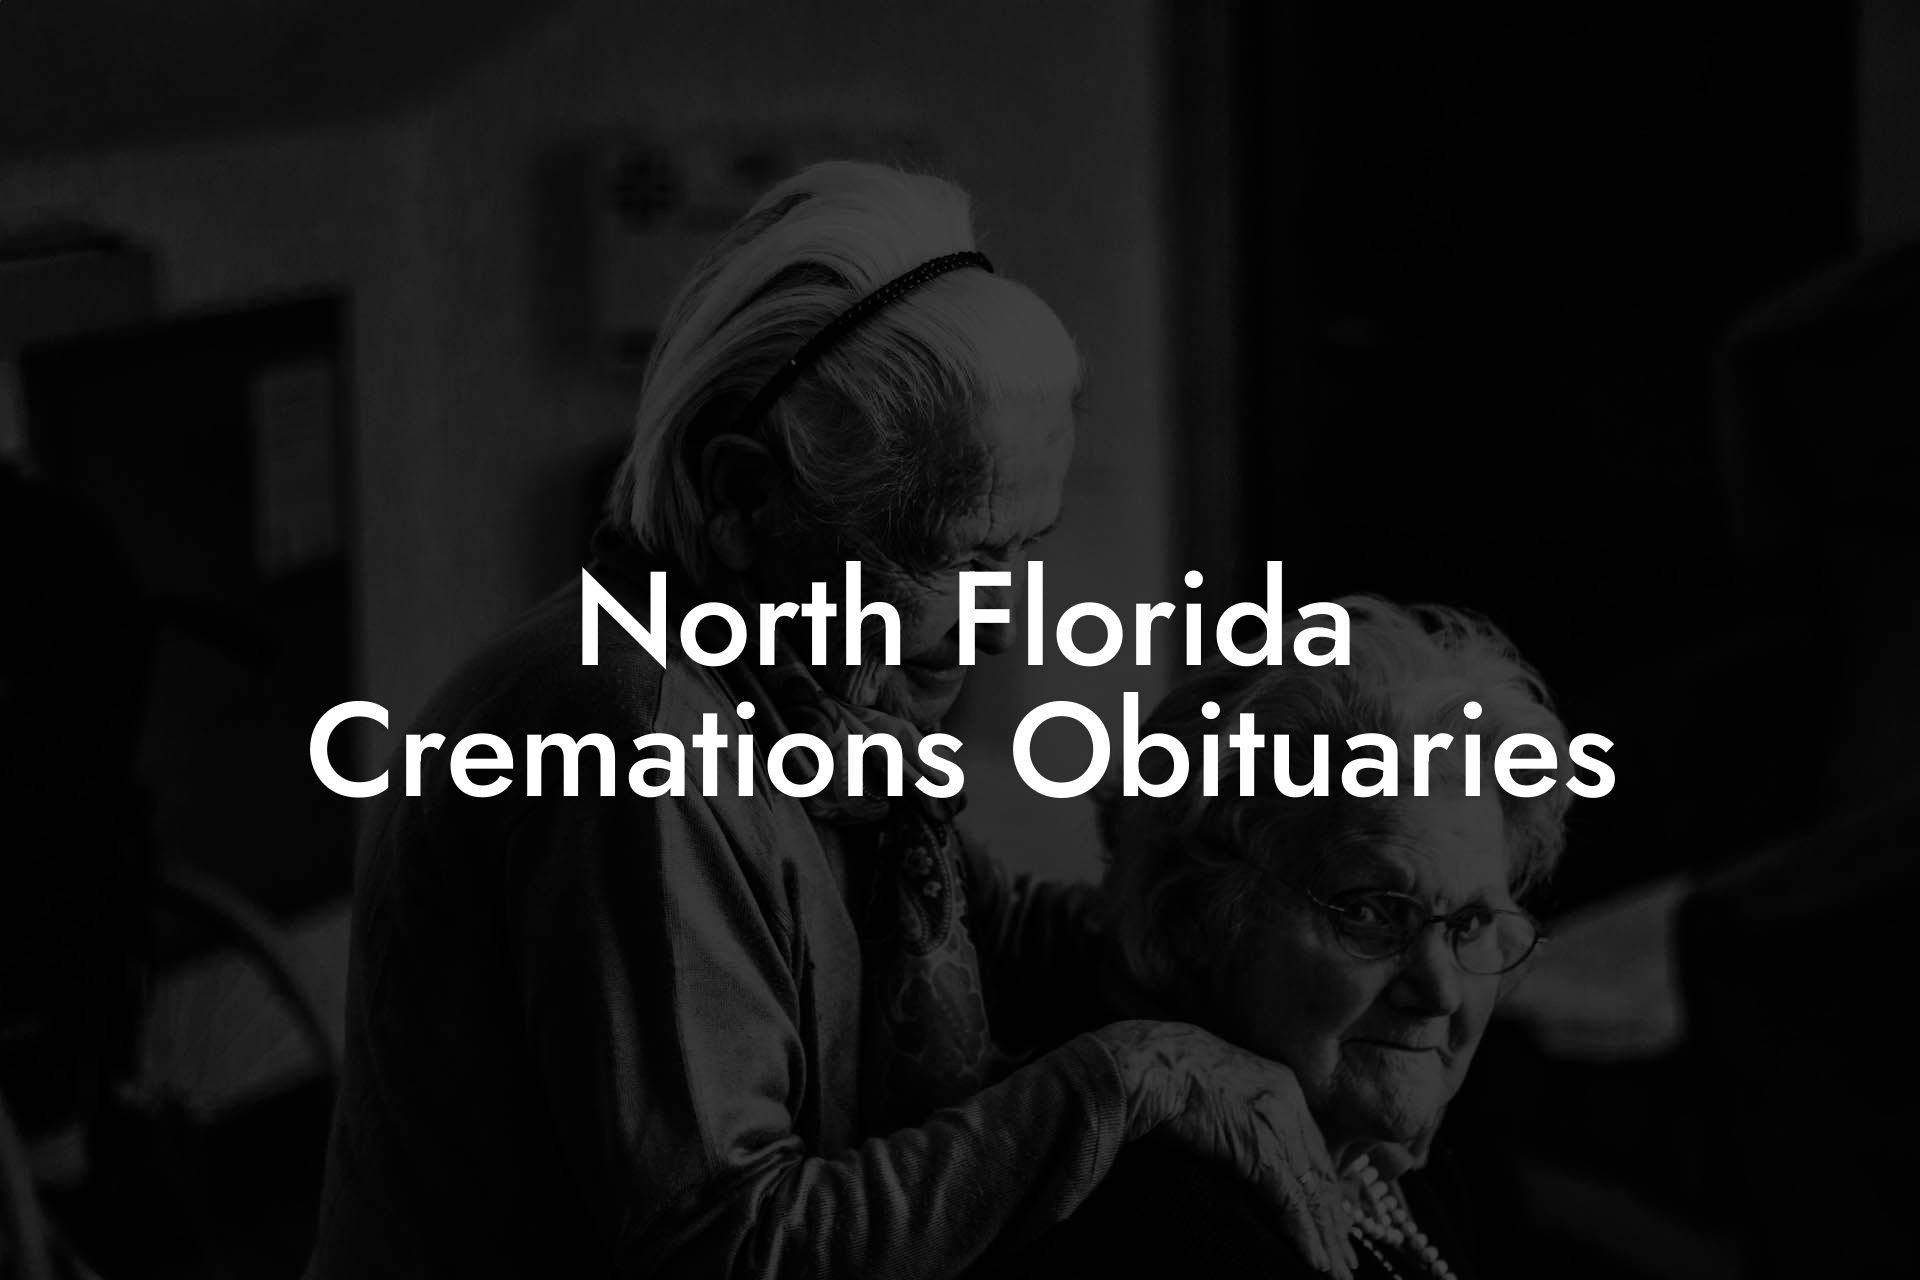 North Florida Cremations Obituaries